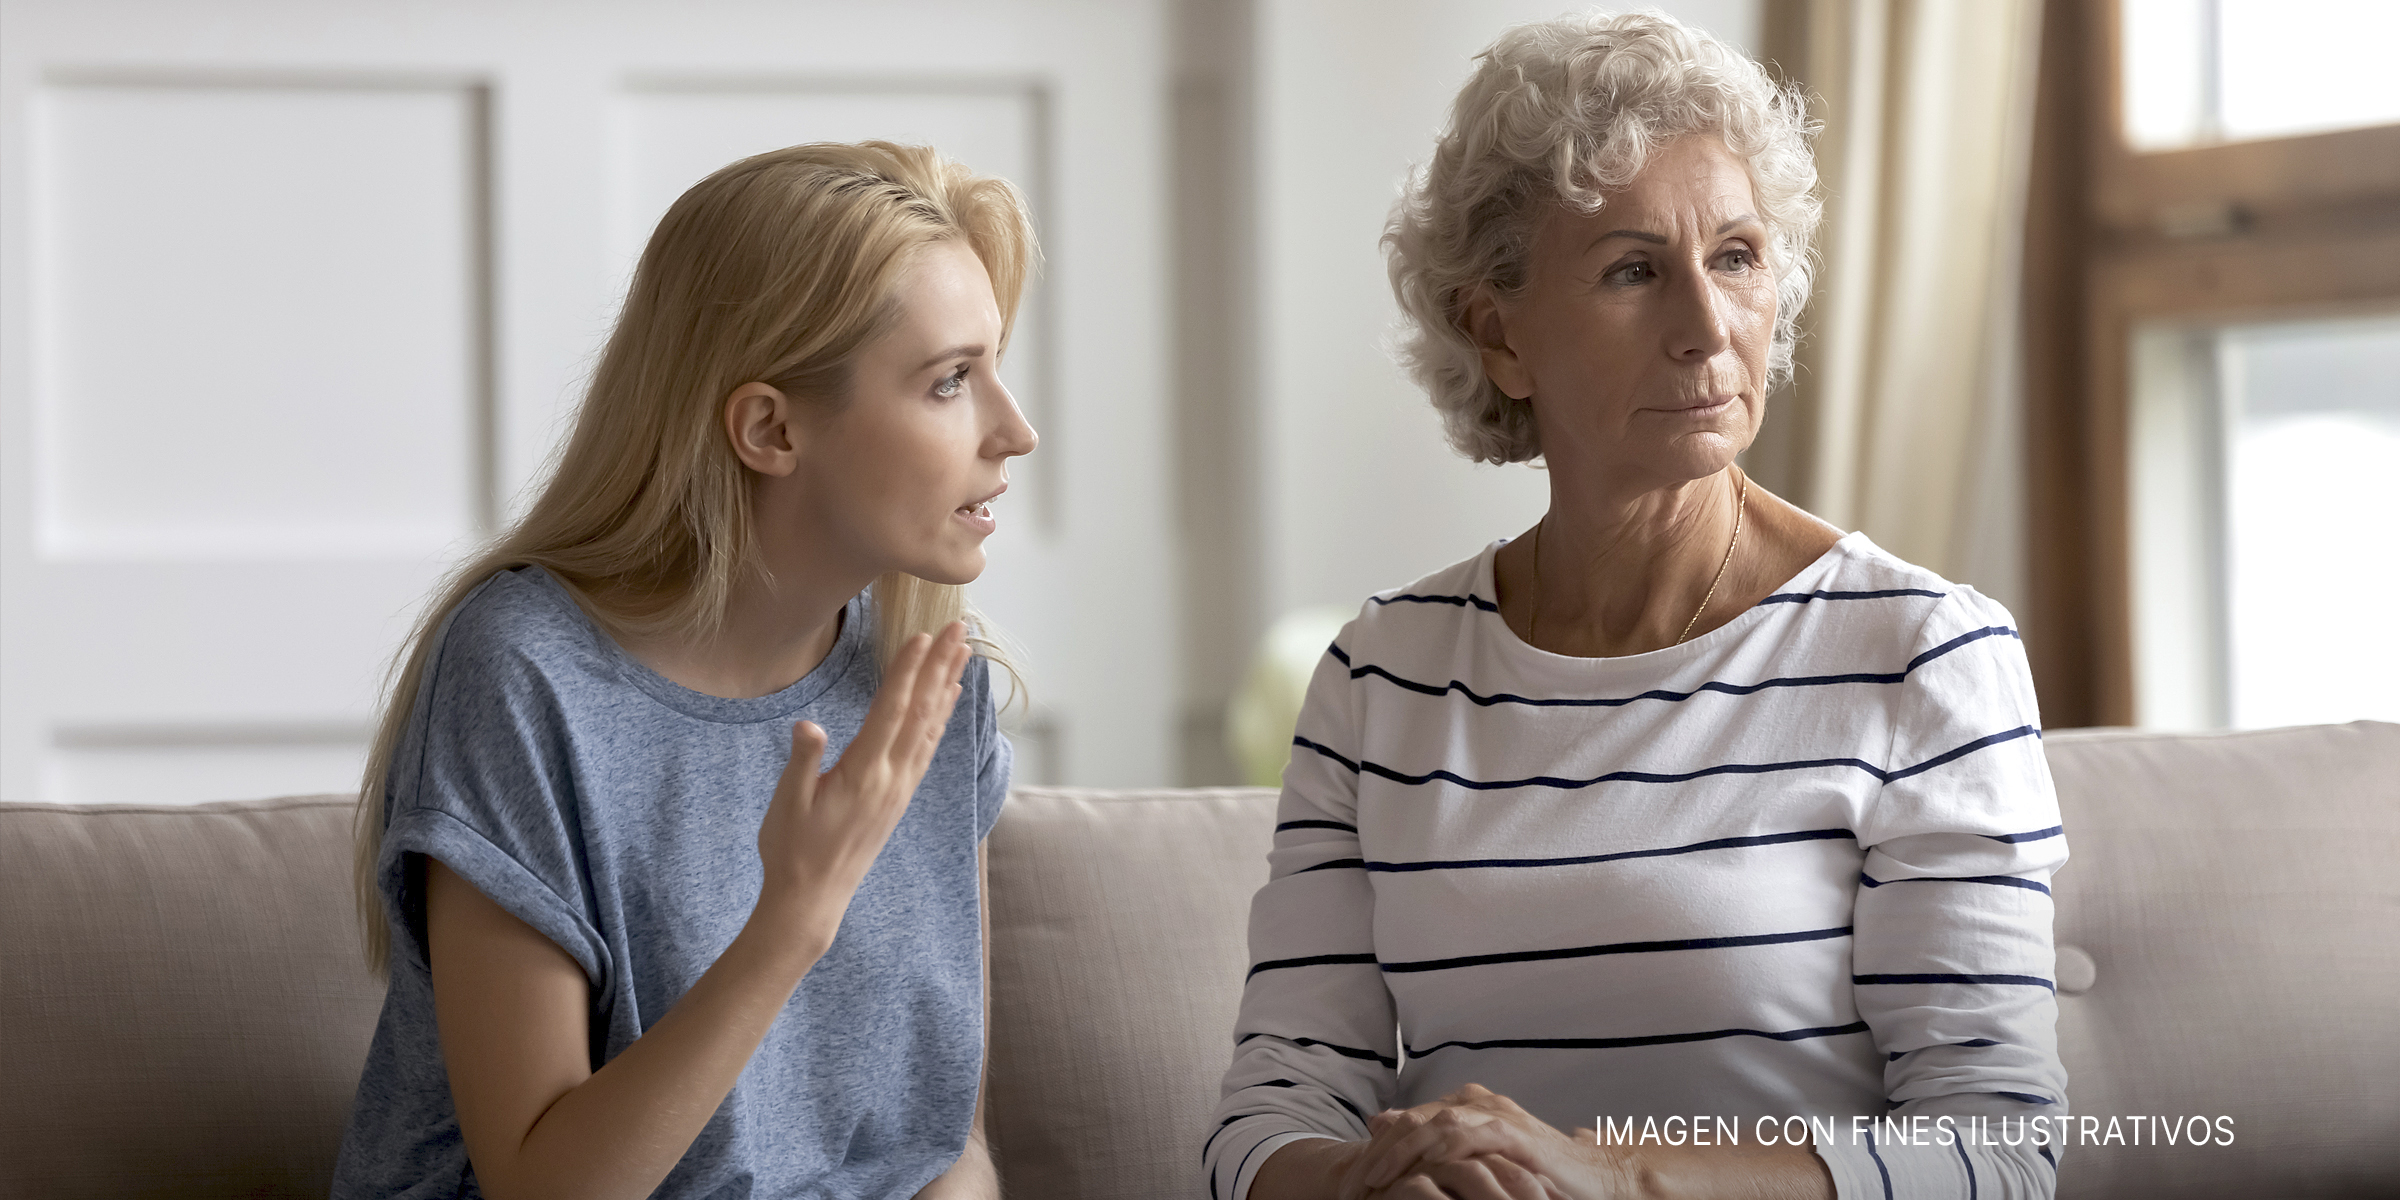 Una mujer joven hablando con severidad a una mujer mayor. | Foto: Shutterstock